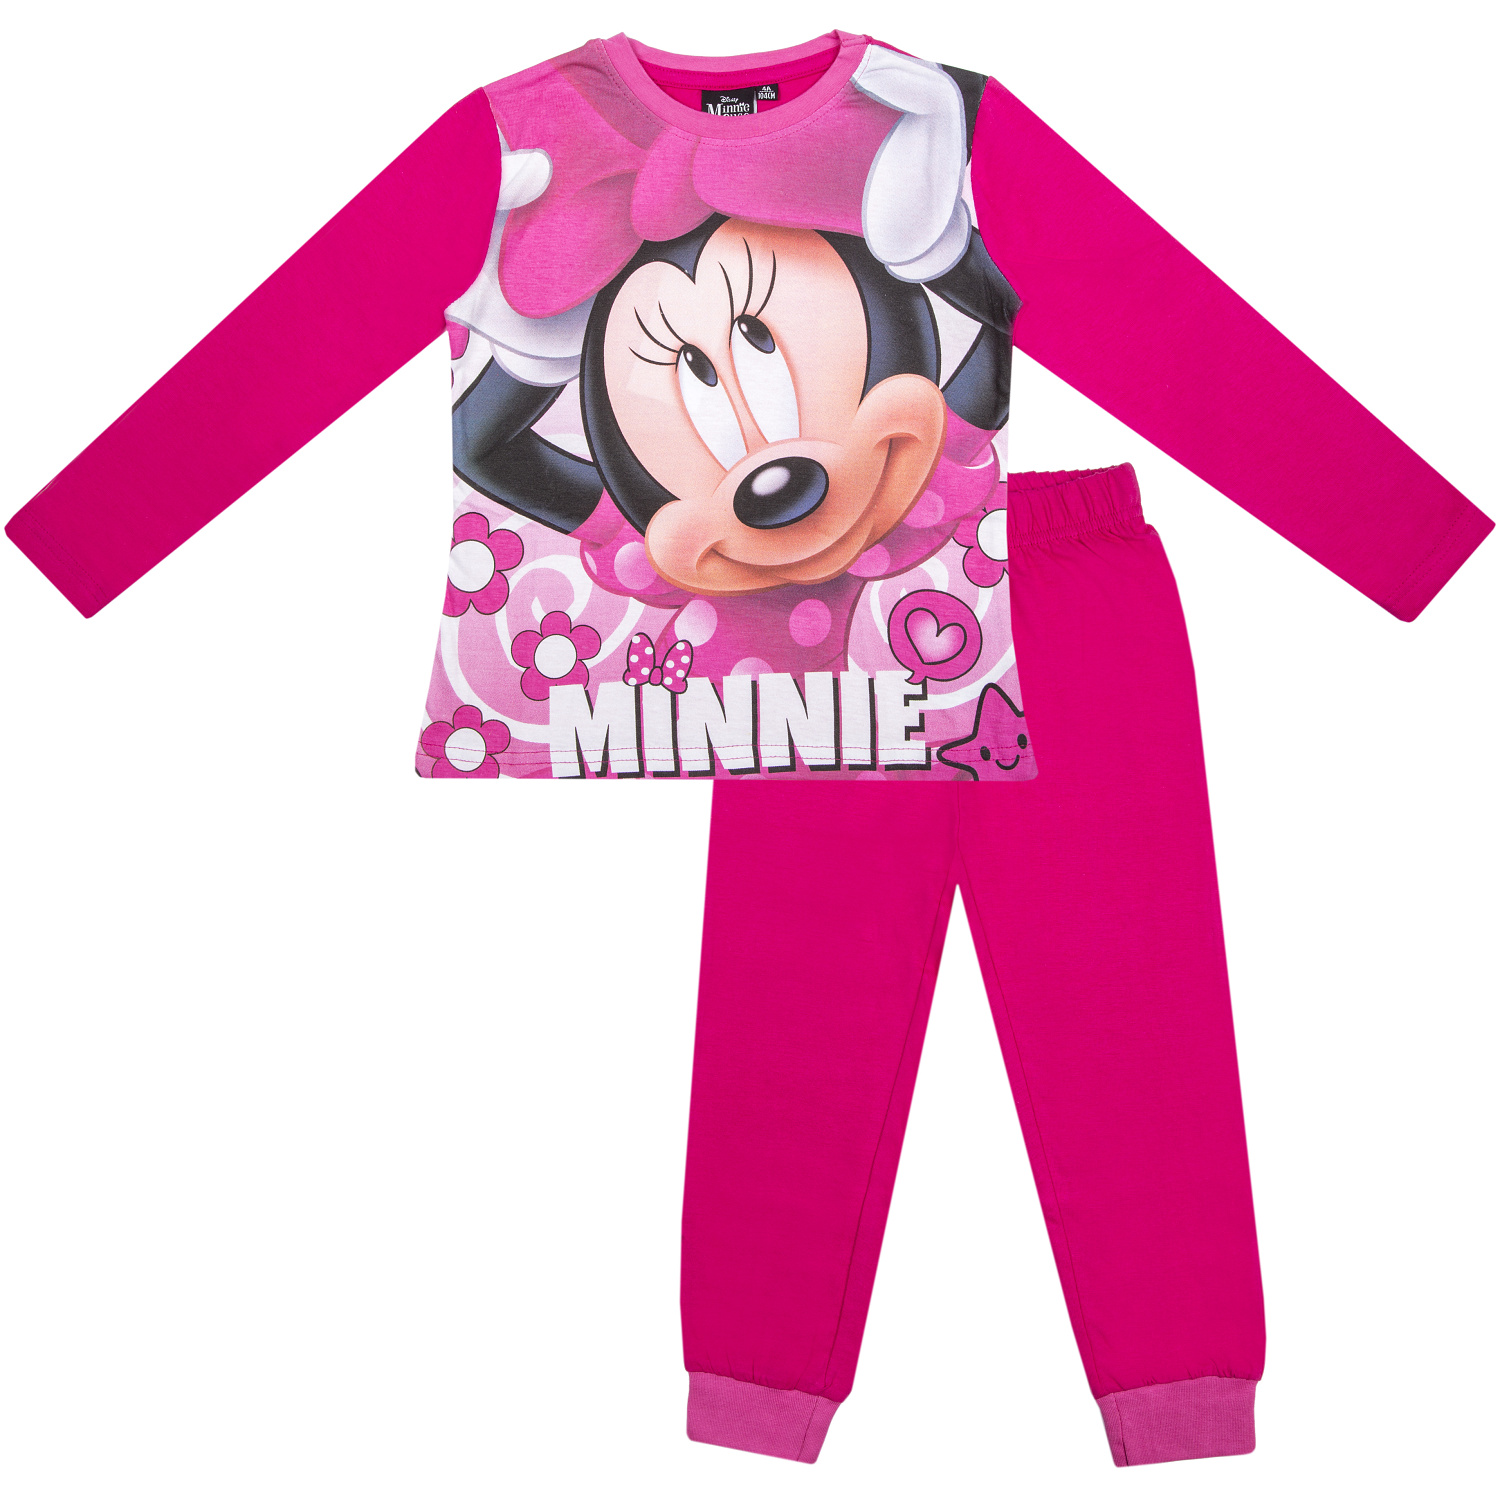 Minnie - licence Dívčí pyžamo - Minnie G-483, růžová tmavší Barva: Růžová, Velikost: 128